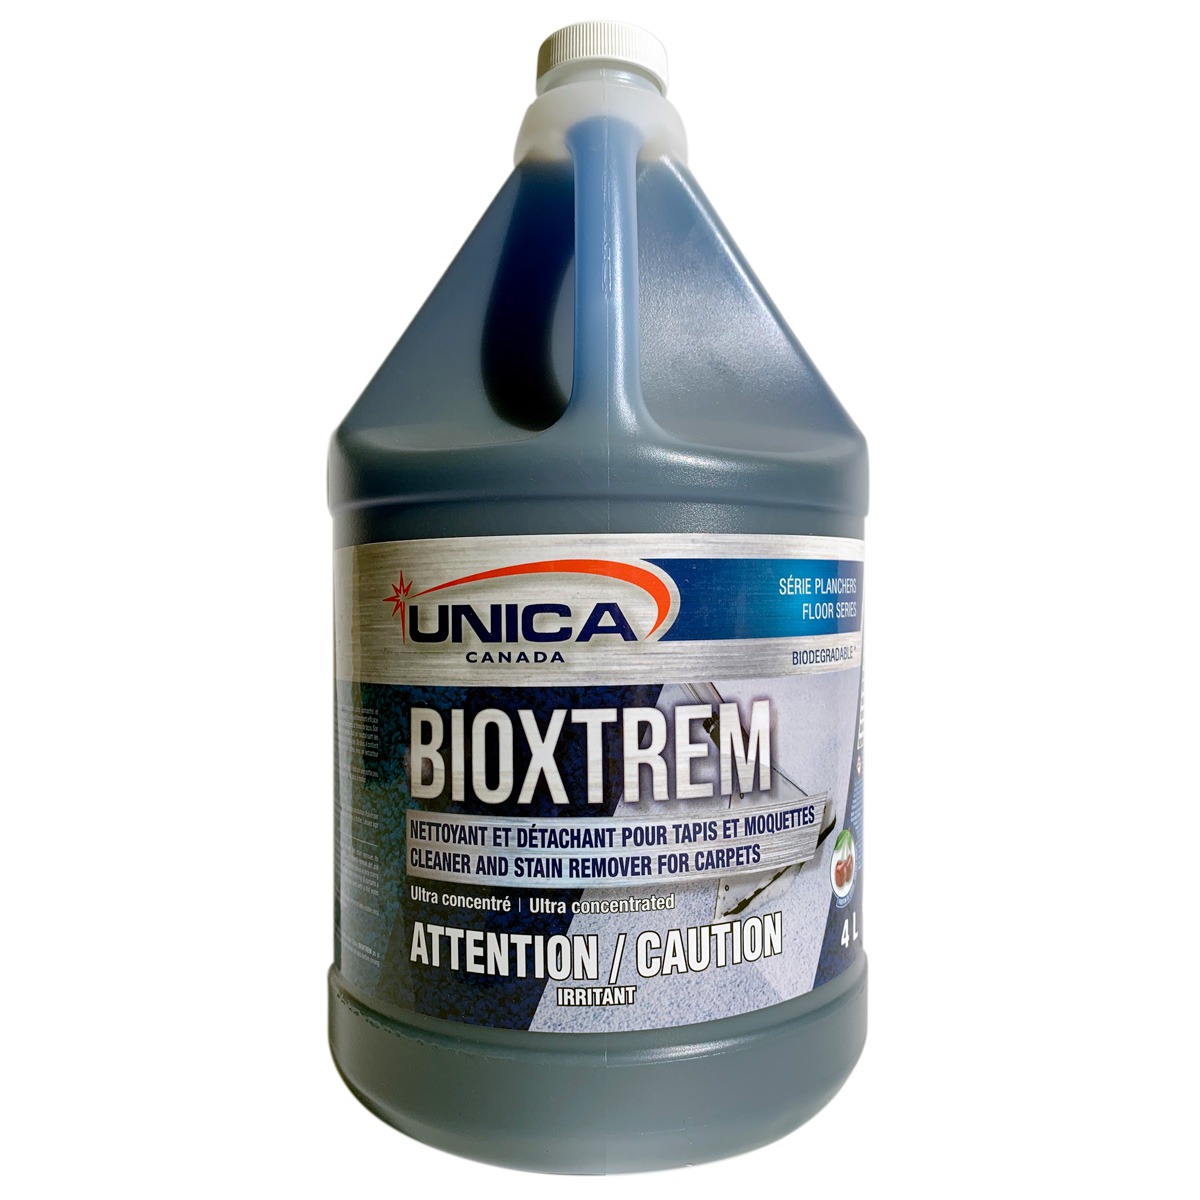 Bioxtrem